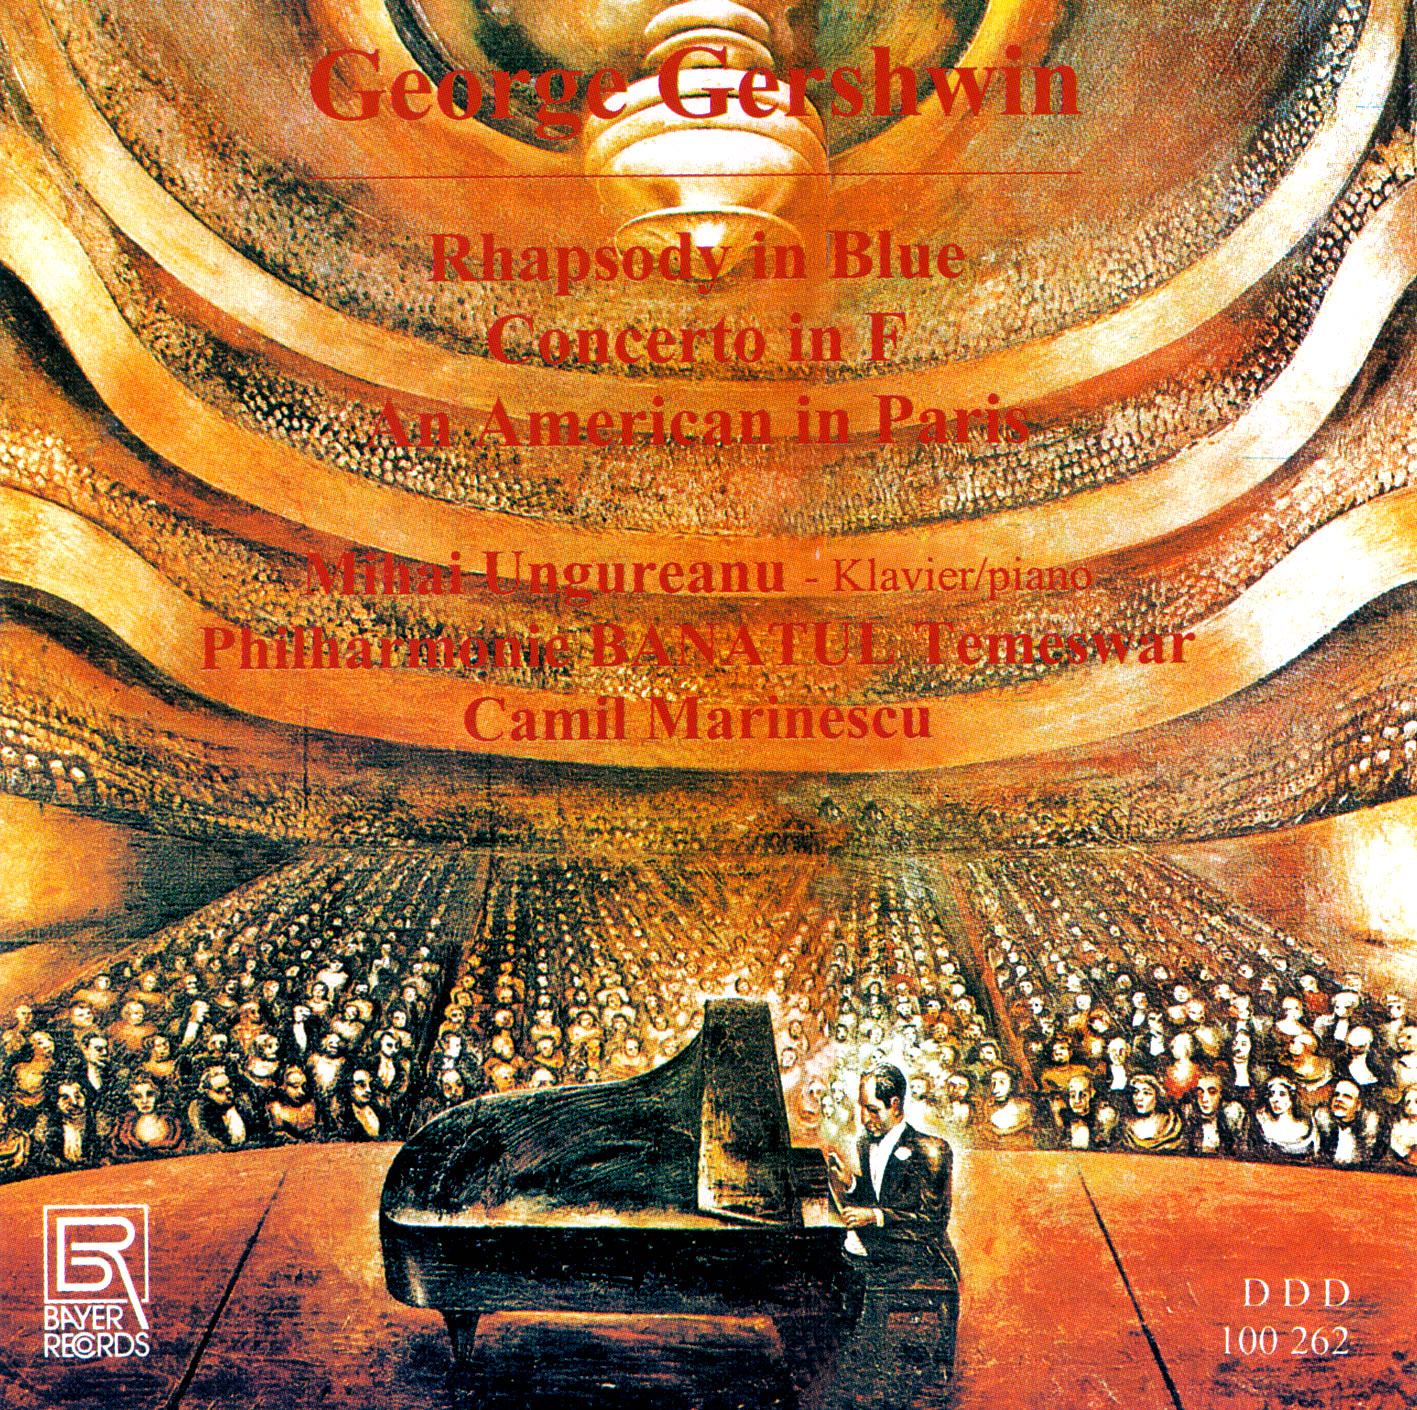 George Gershwin - Rhapsody in blue, Concerto in F